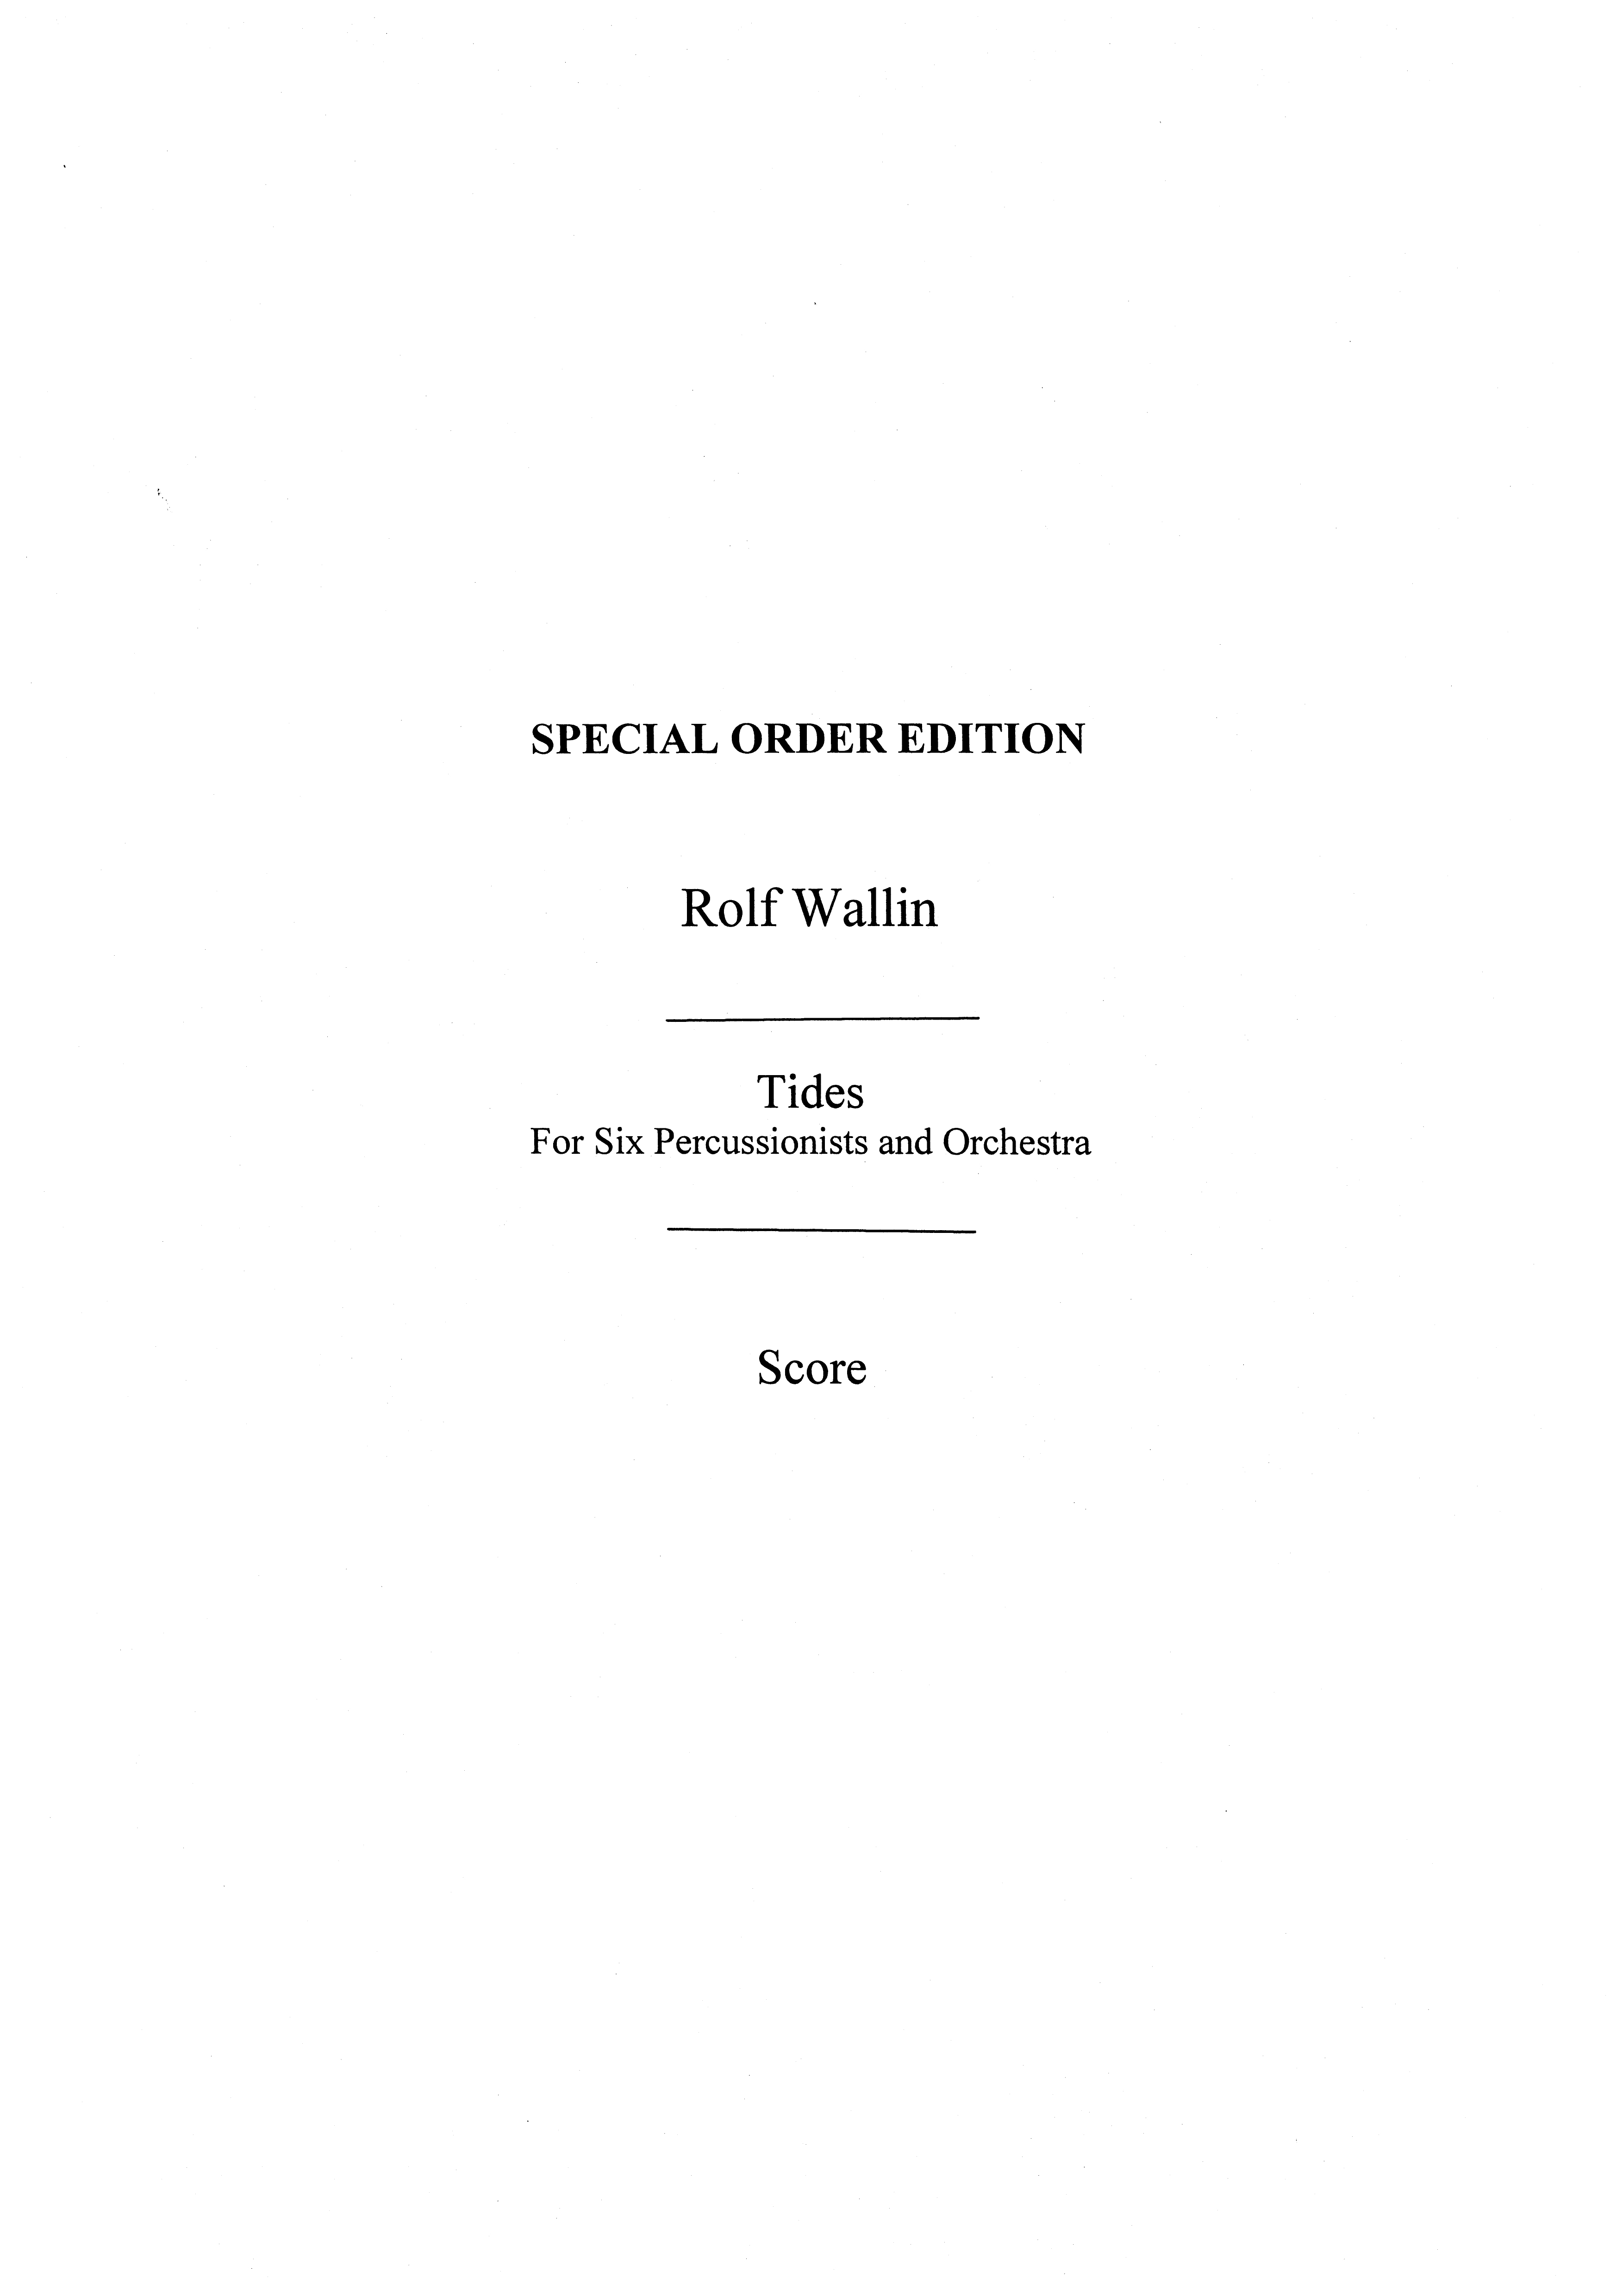 Rolf Wallin: Tides: Percussion: Score